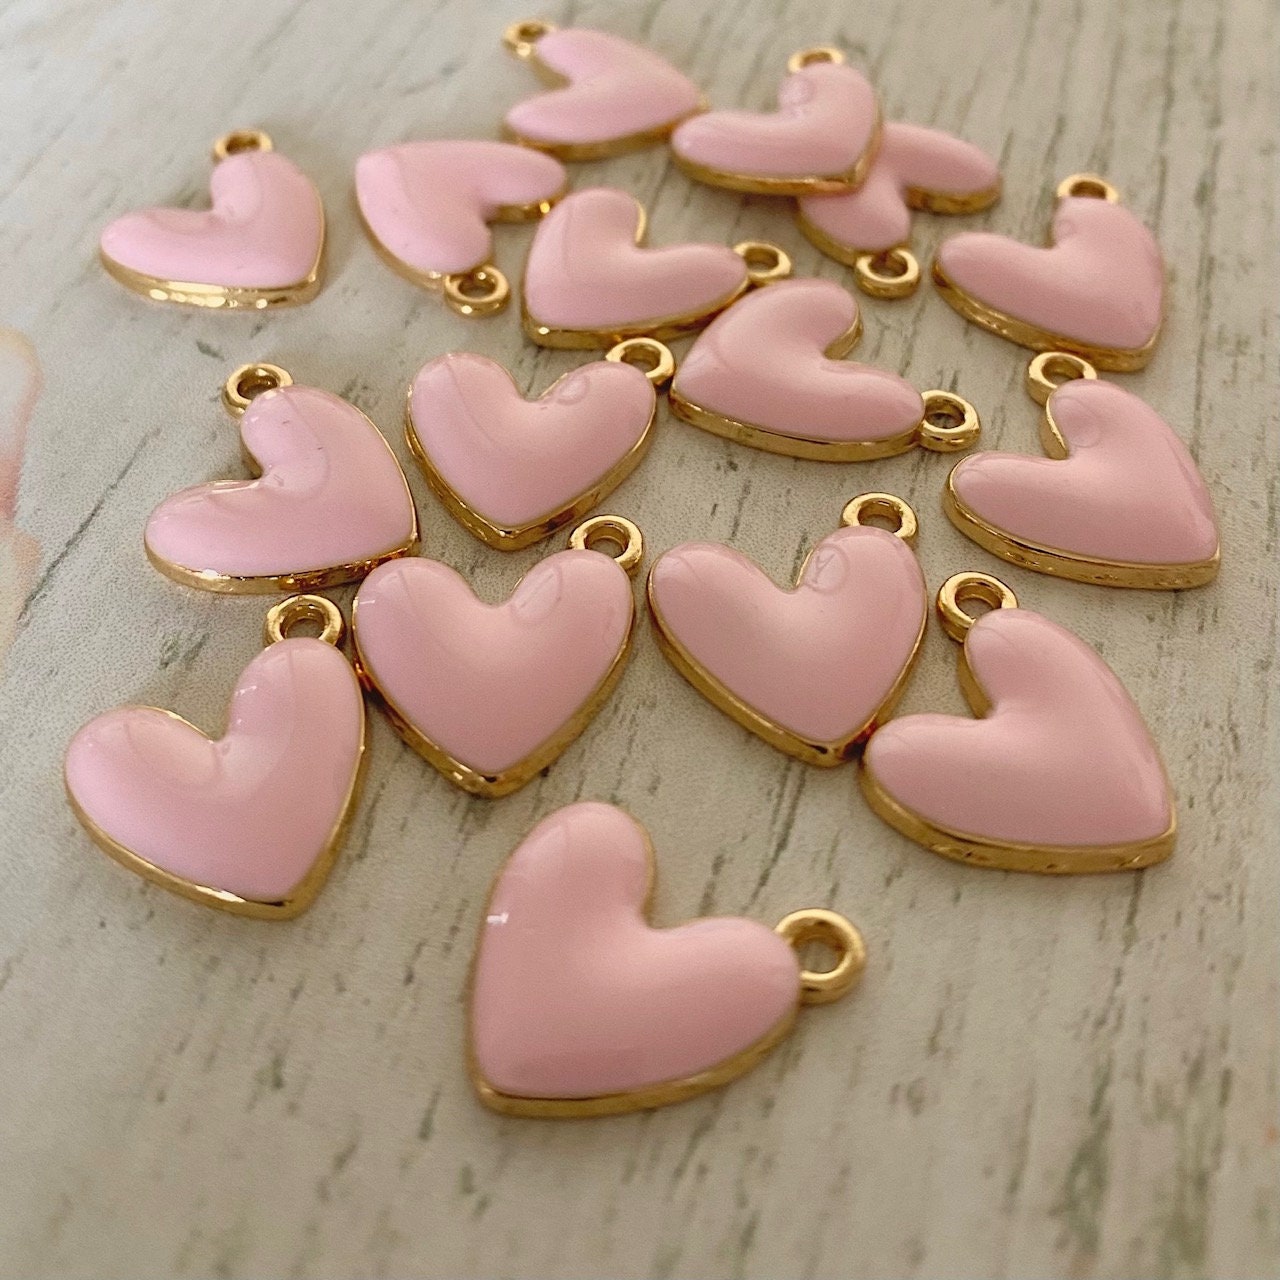 Heart Charms Enamel Purple Love Heart Charm , Pendant, Love Heart Charm,  Earring Parts, Pendants DIY Jewellery Findings 